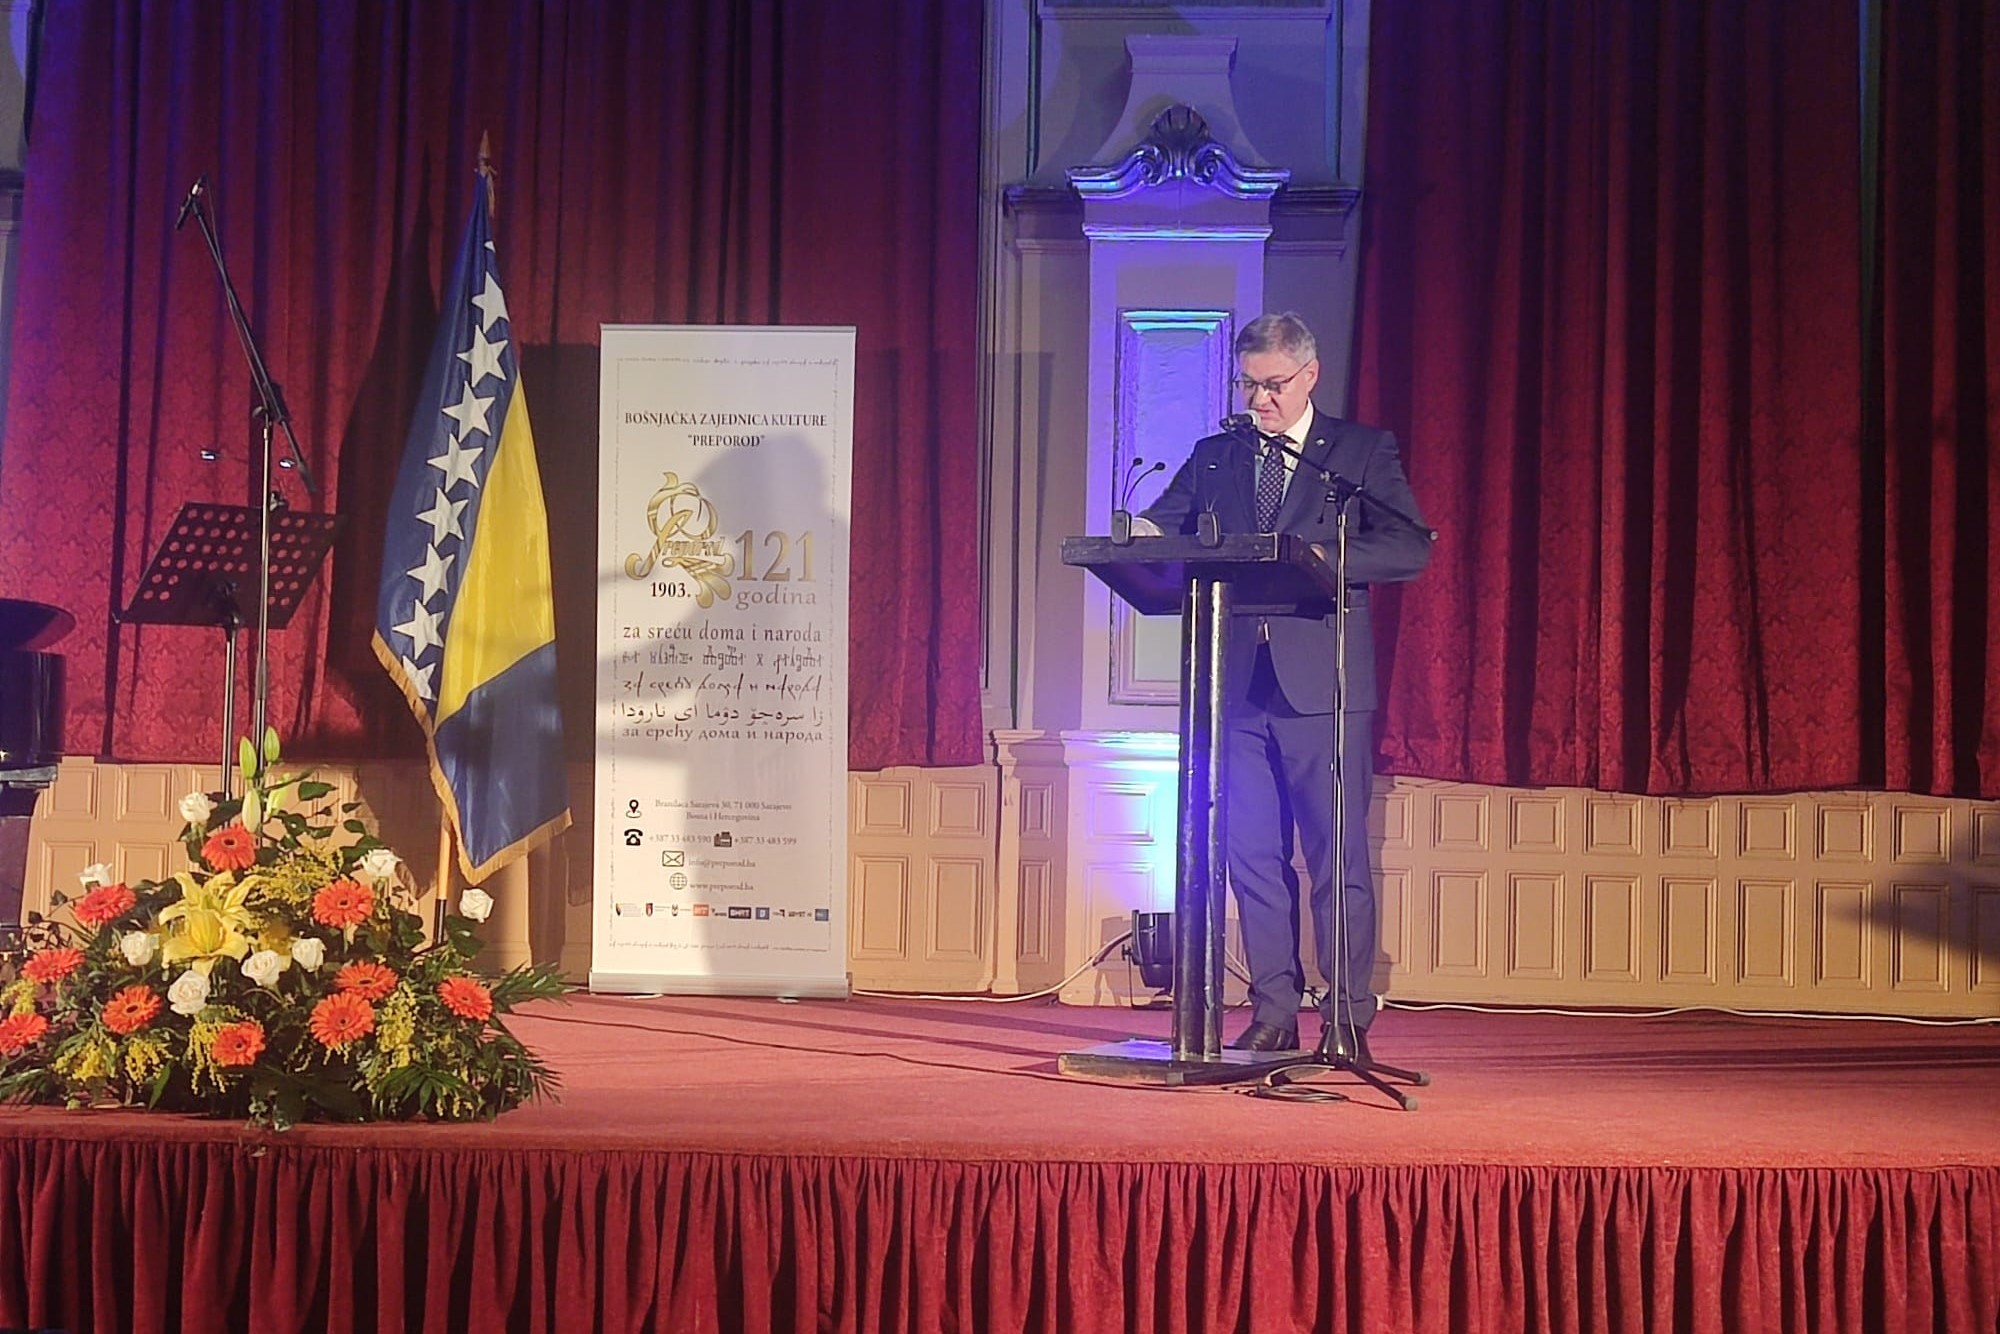 Zamjenik predsjedatelja Zastupničkog doma PSBiH dr. Denis Zvizdić održao govor na svečanosti obilježavanja 121. obljetnice utemeljenja “Preporoda” 